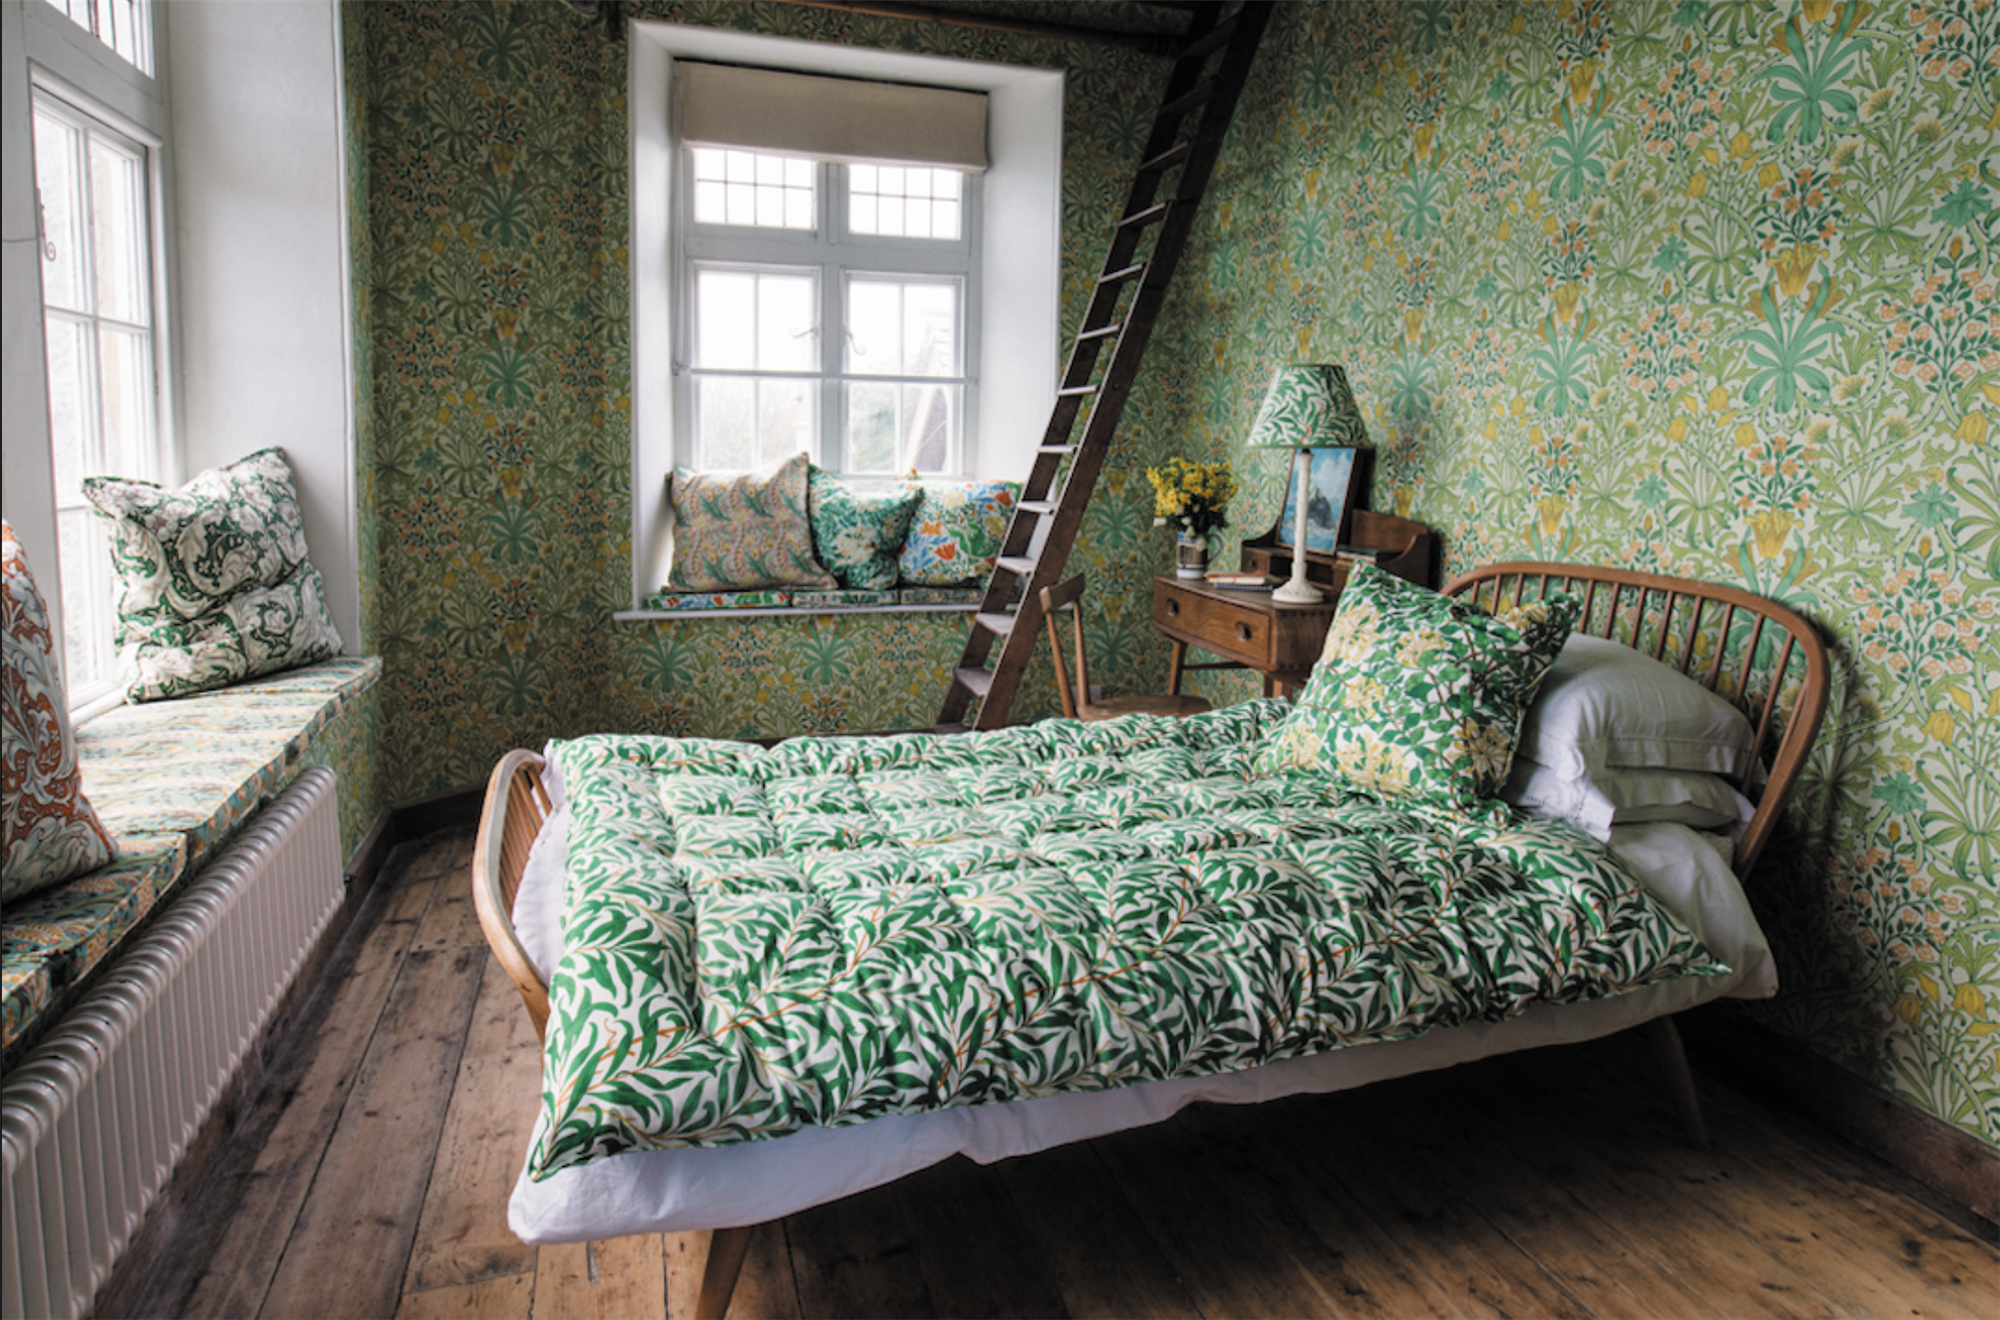 Dormitorio con papel pintado de motivos vegetales.